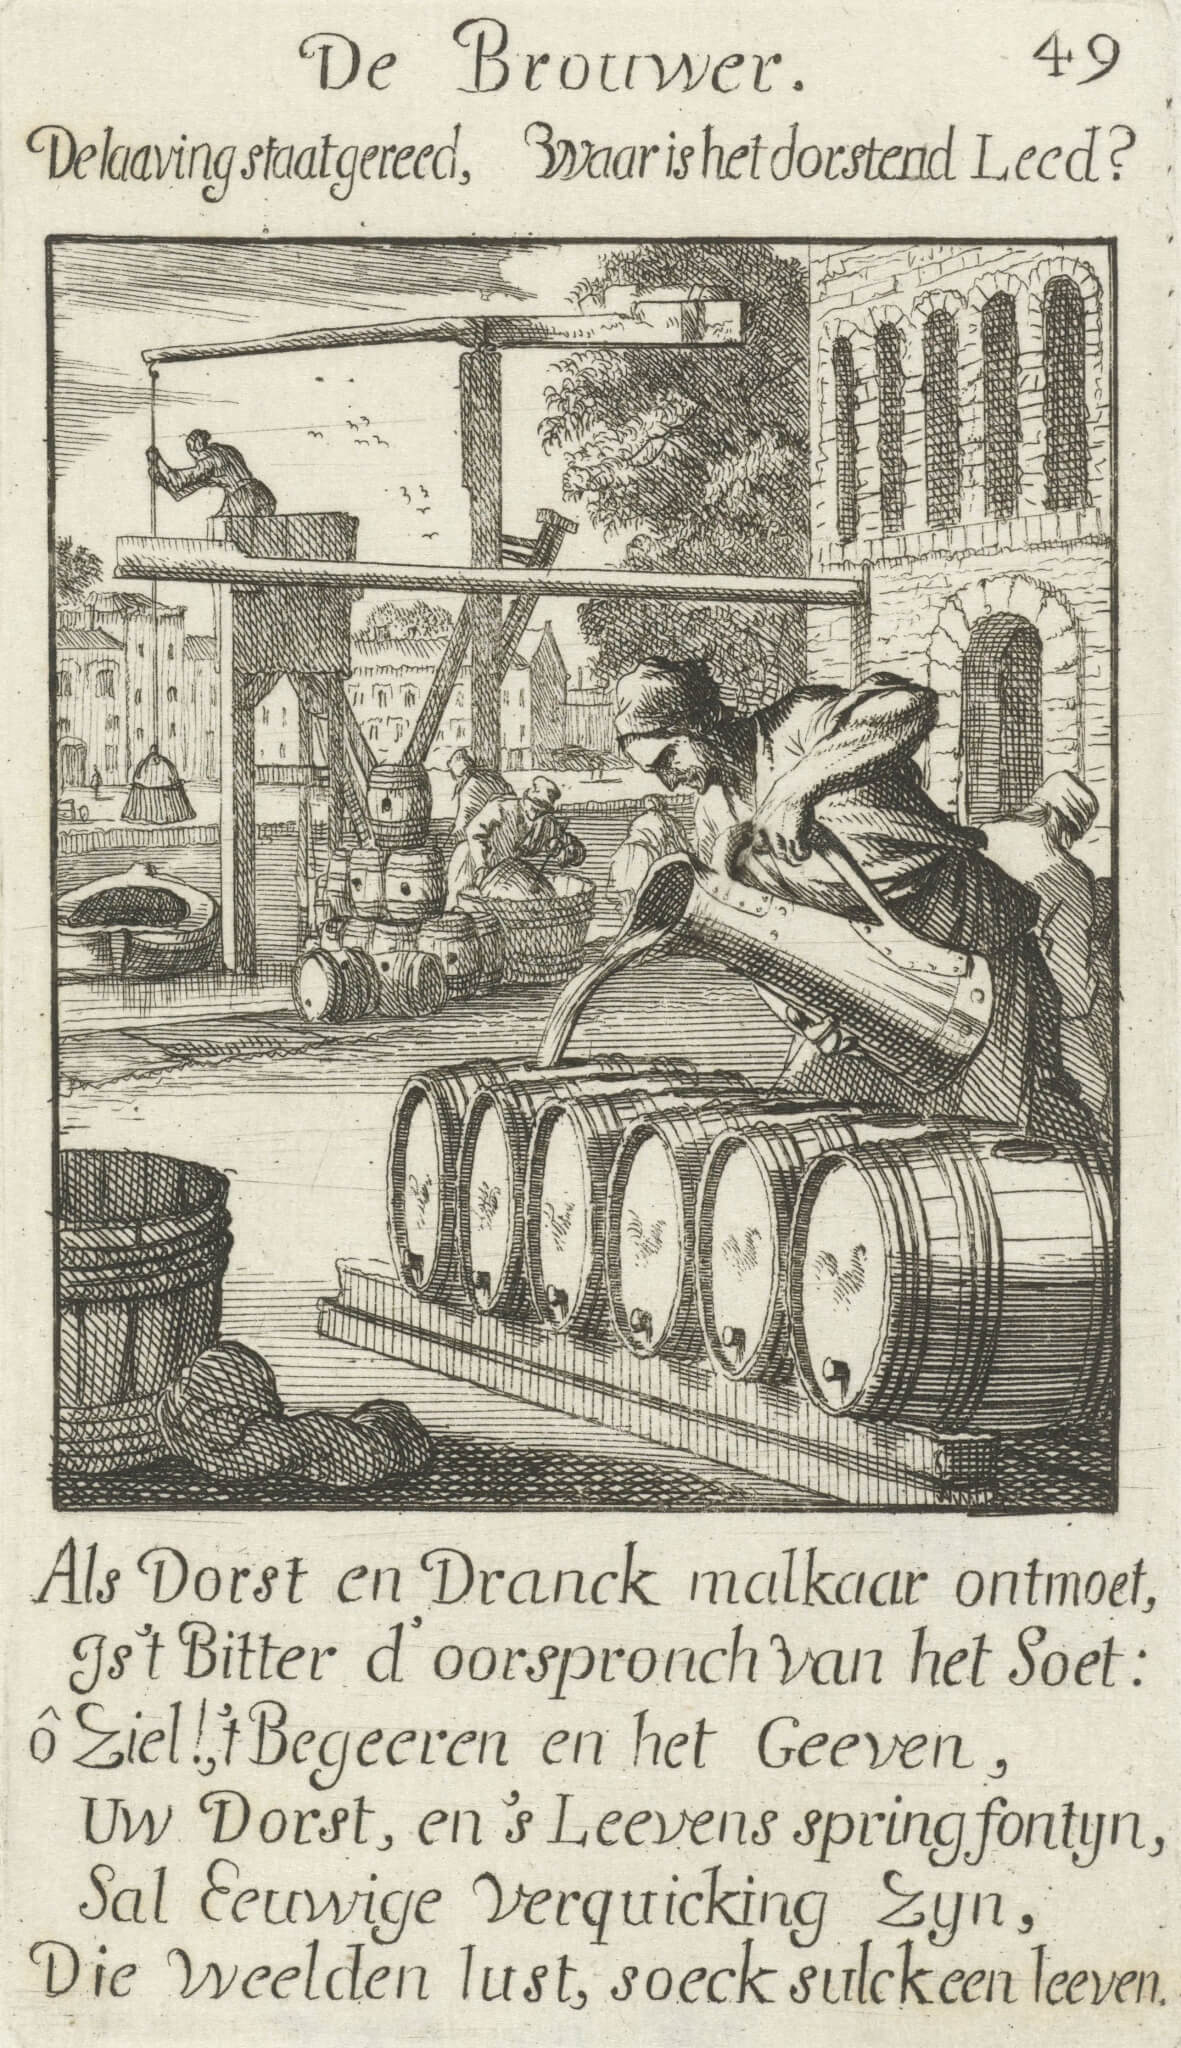 Etching of a beer brewer by Caspar Lyken, 1694